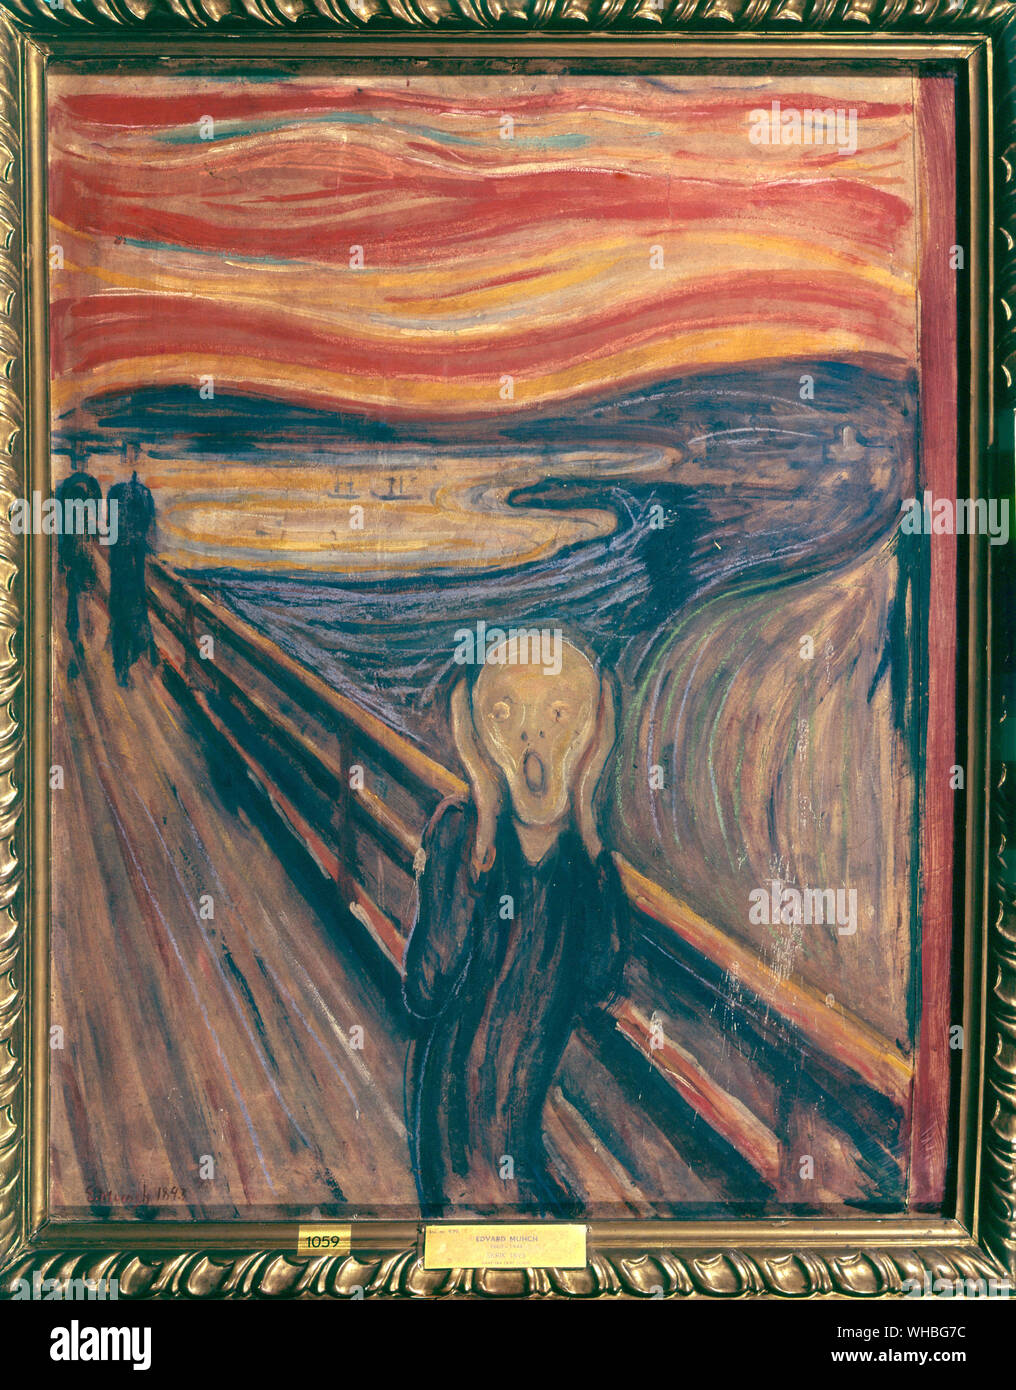 Le cri d'Edward Munch - - Edvard Munch , 12 décembre 1863 - 23 janvier 1944) fut un peintre symboliste, graveur, et un important précurseur de l'art expressionniste de son mieux connu de la peinture, le cri (1893), est l'une des pièces d'une série intitulée La frise de la vie, dans lequel les thèmes explorés Munch de la vie, l'amour, la peur, la mort, et de la mélancolie. Comme bon nombre de ses œuvres, il peint plusieurs versions.. Banque D'Images